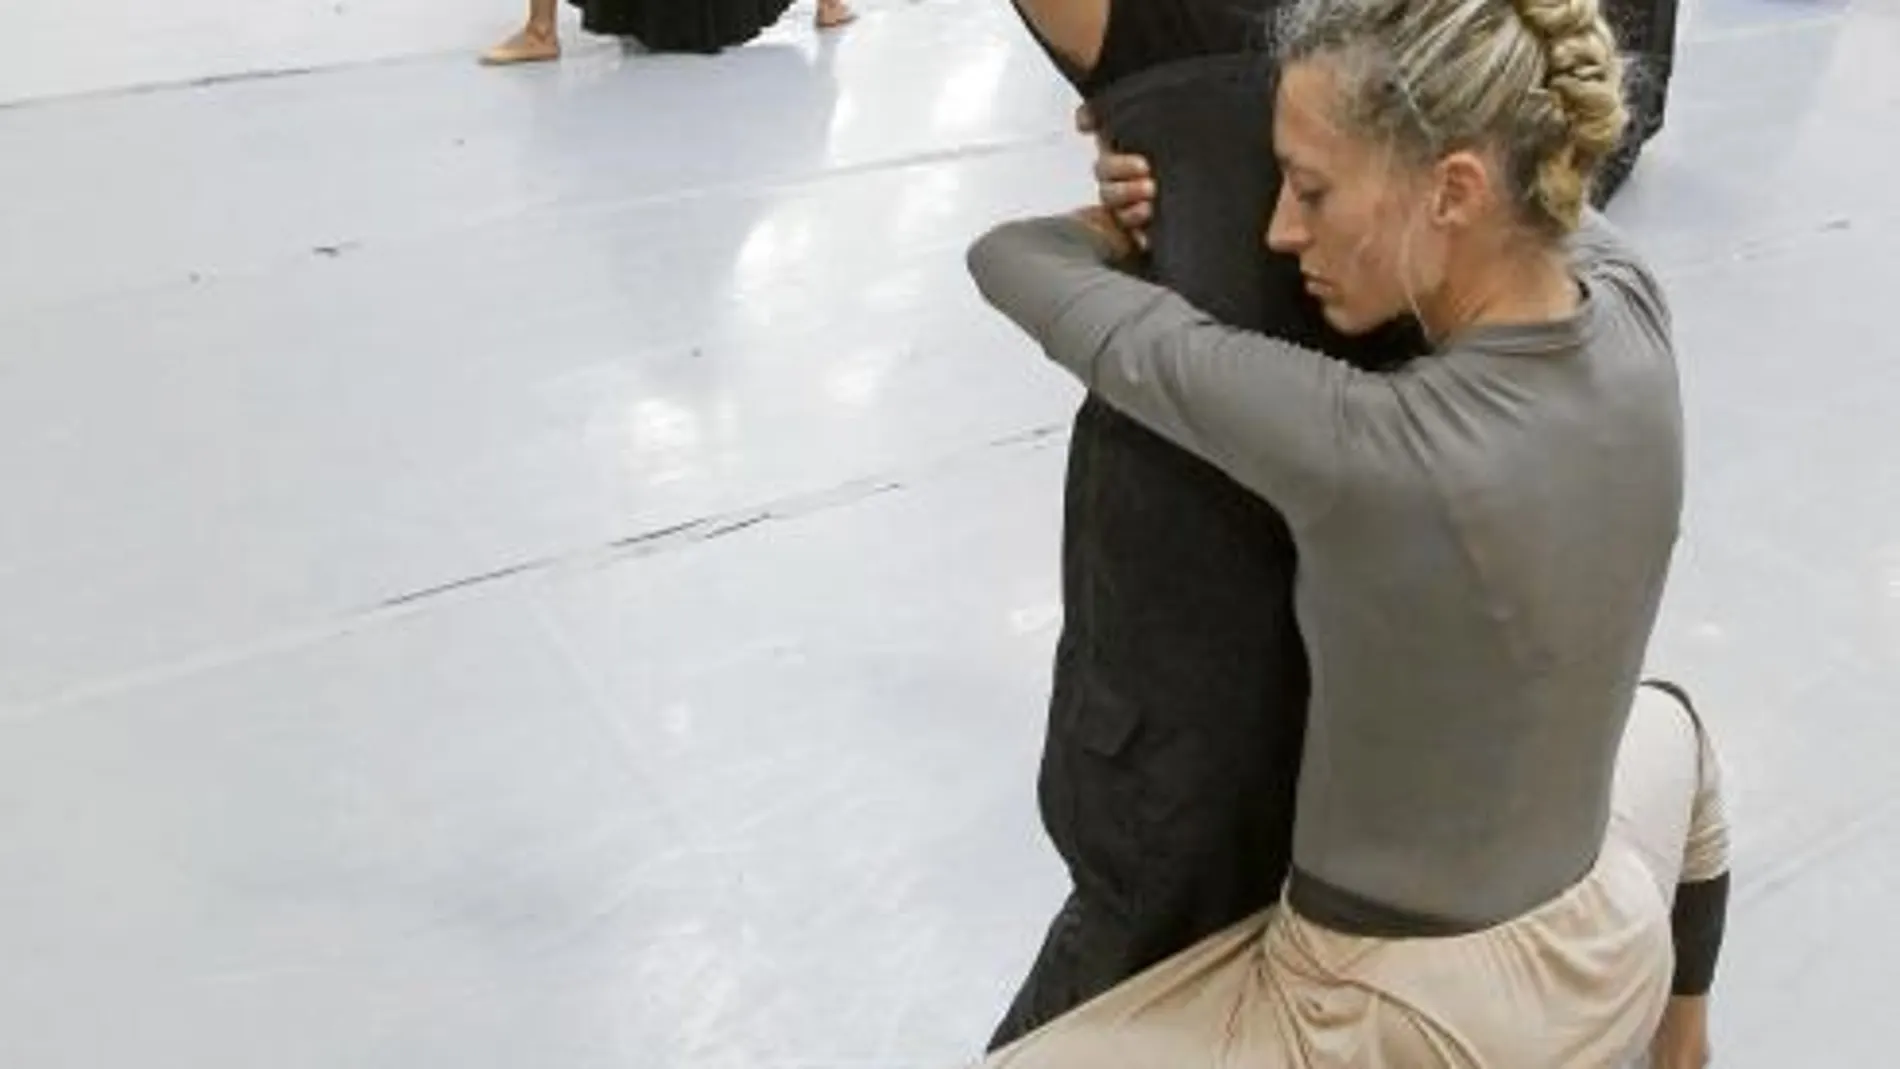 La Compañía Nacional de Danza presentó ayer a los medios su nueva temporada, la primera del nuevo director, procedente del Ballet de la Ópera de París